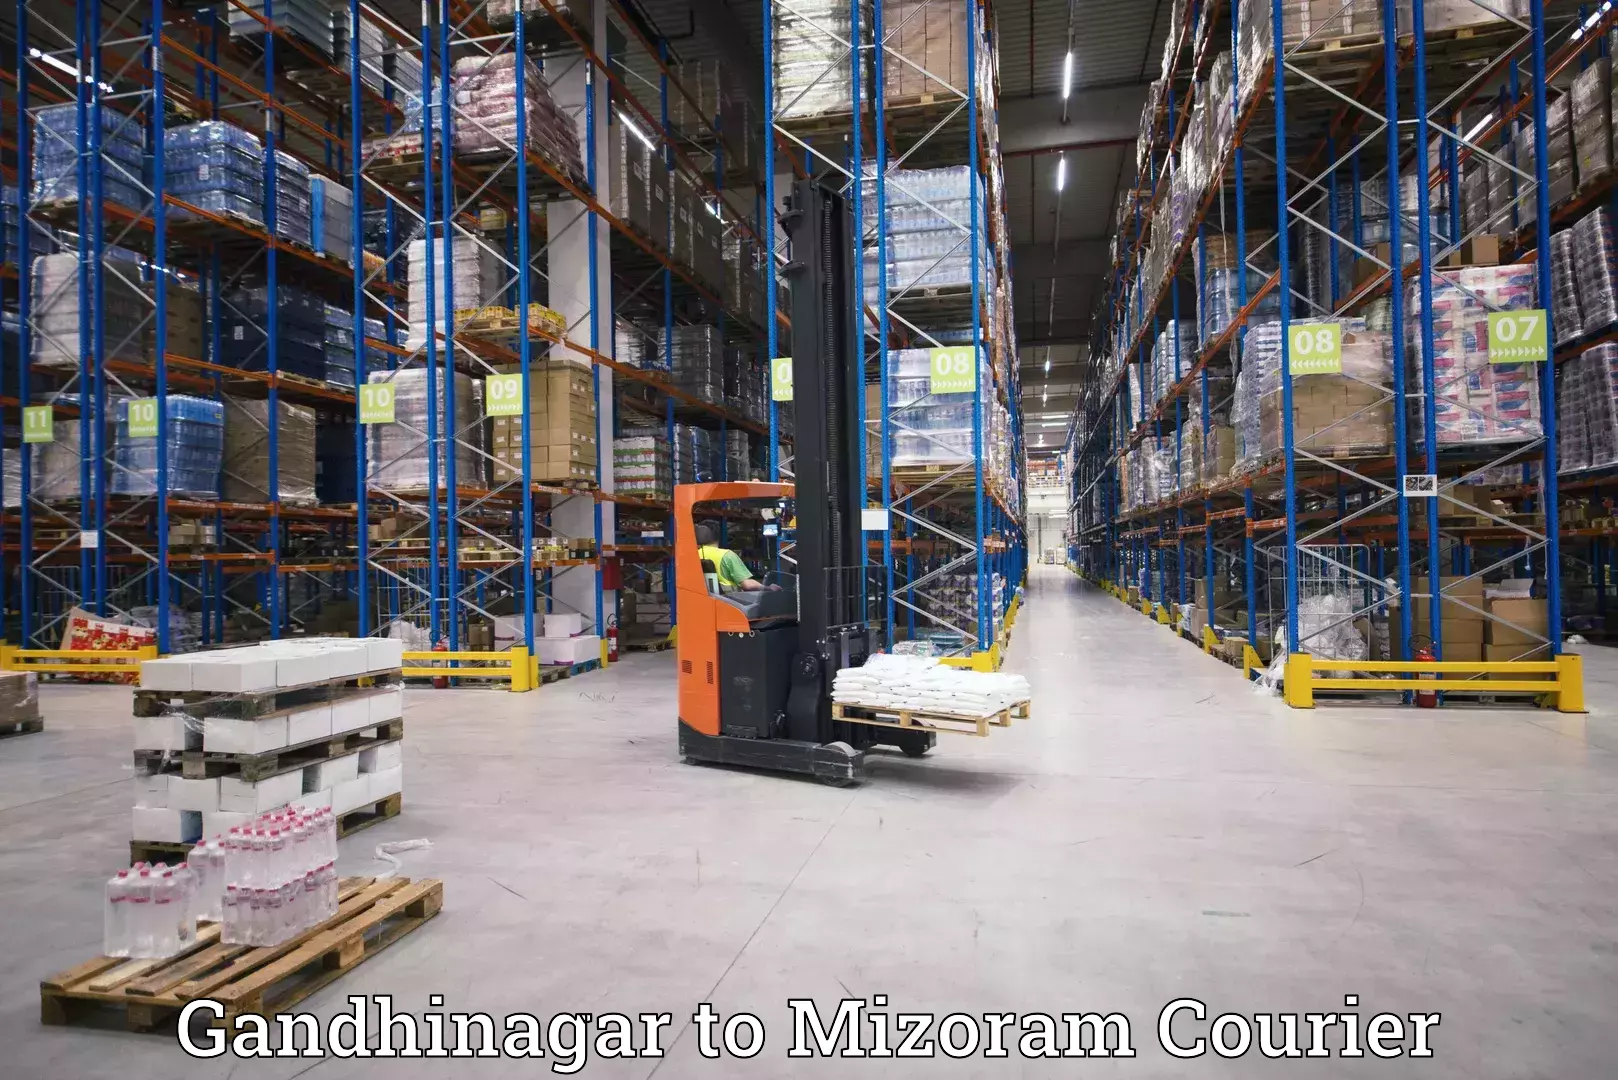 Customer-oriented courier services Gandhinagar to NIT Aizawl